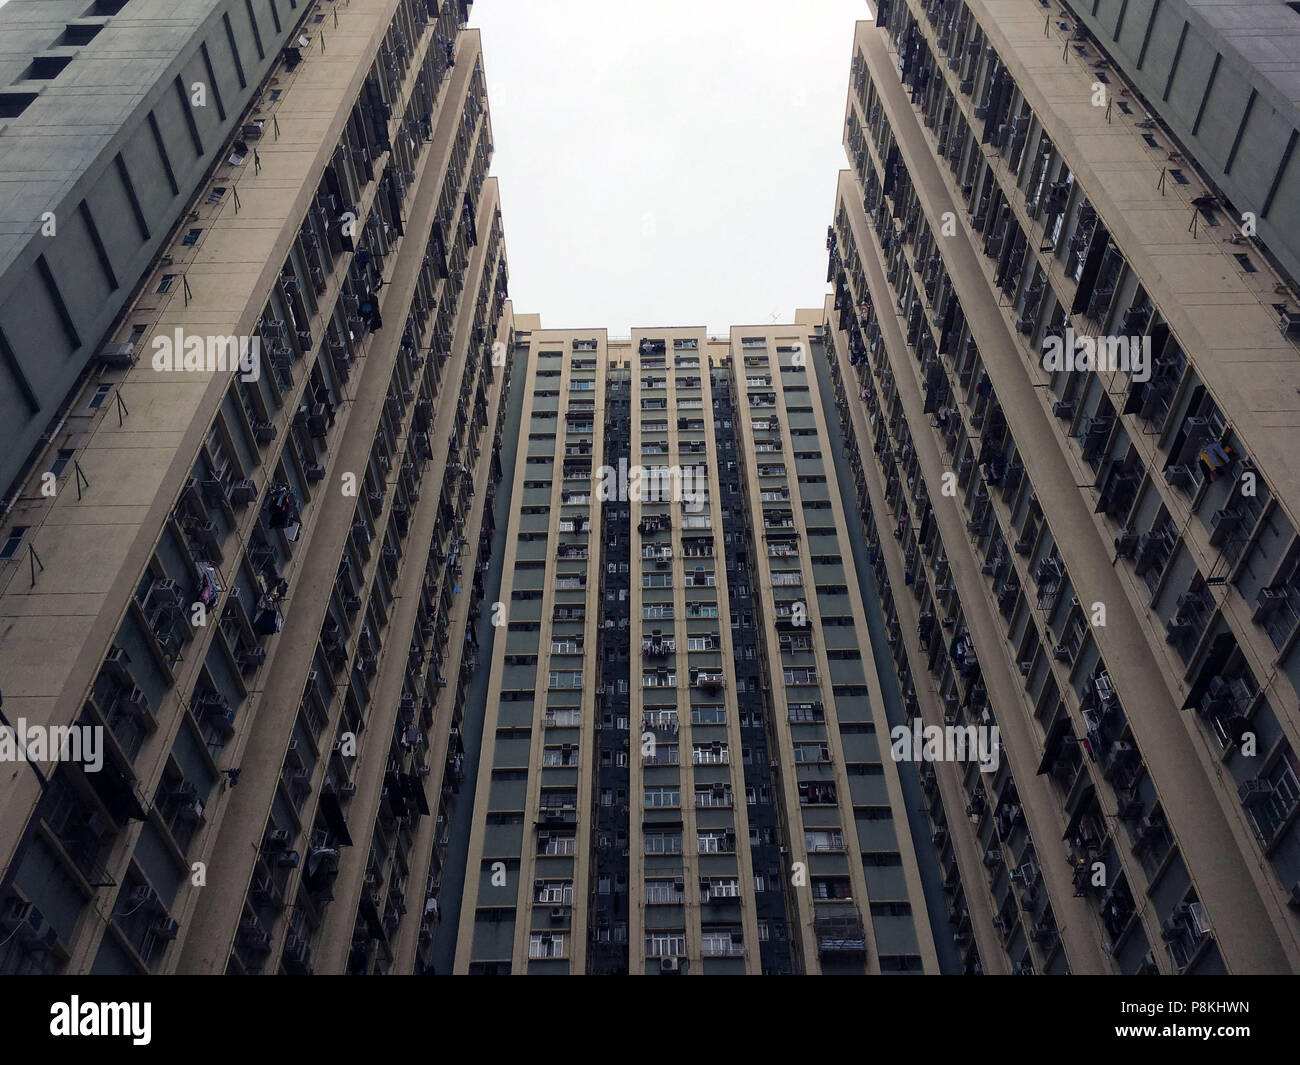 Foto di un edificio a torre nella città di Hong Kong in Asia. Si tratta di architettura tipica costruzione dalla città cinese Foto Stock